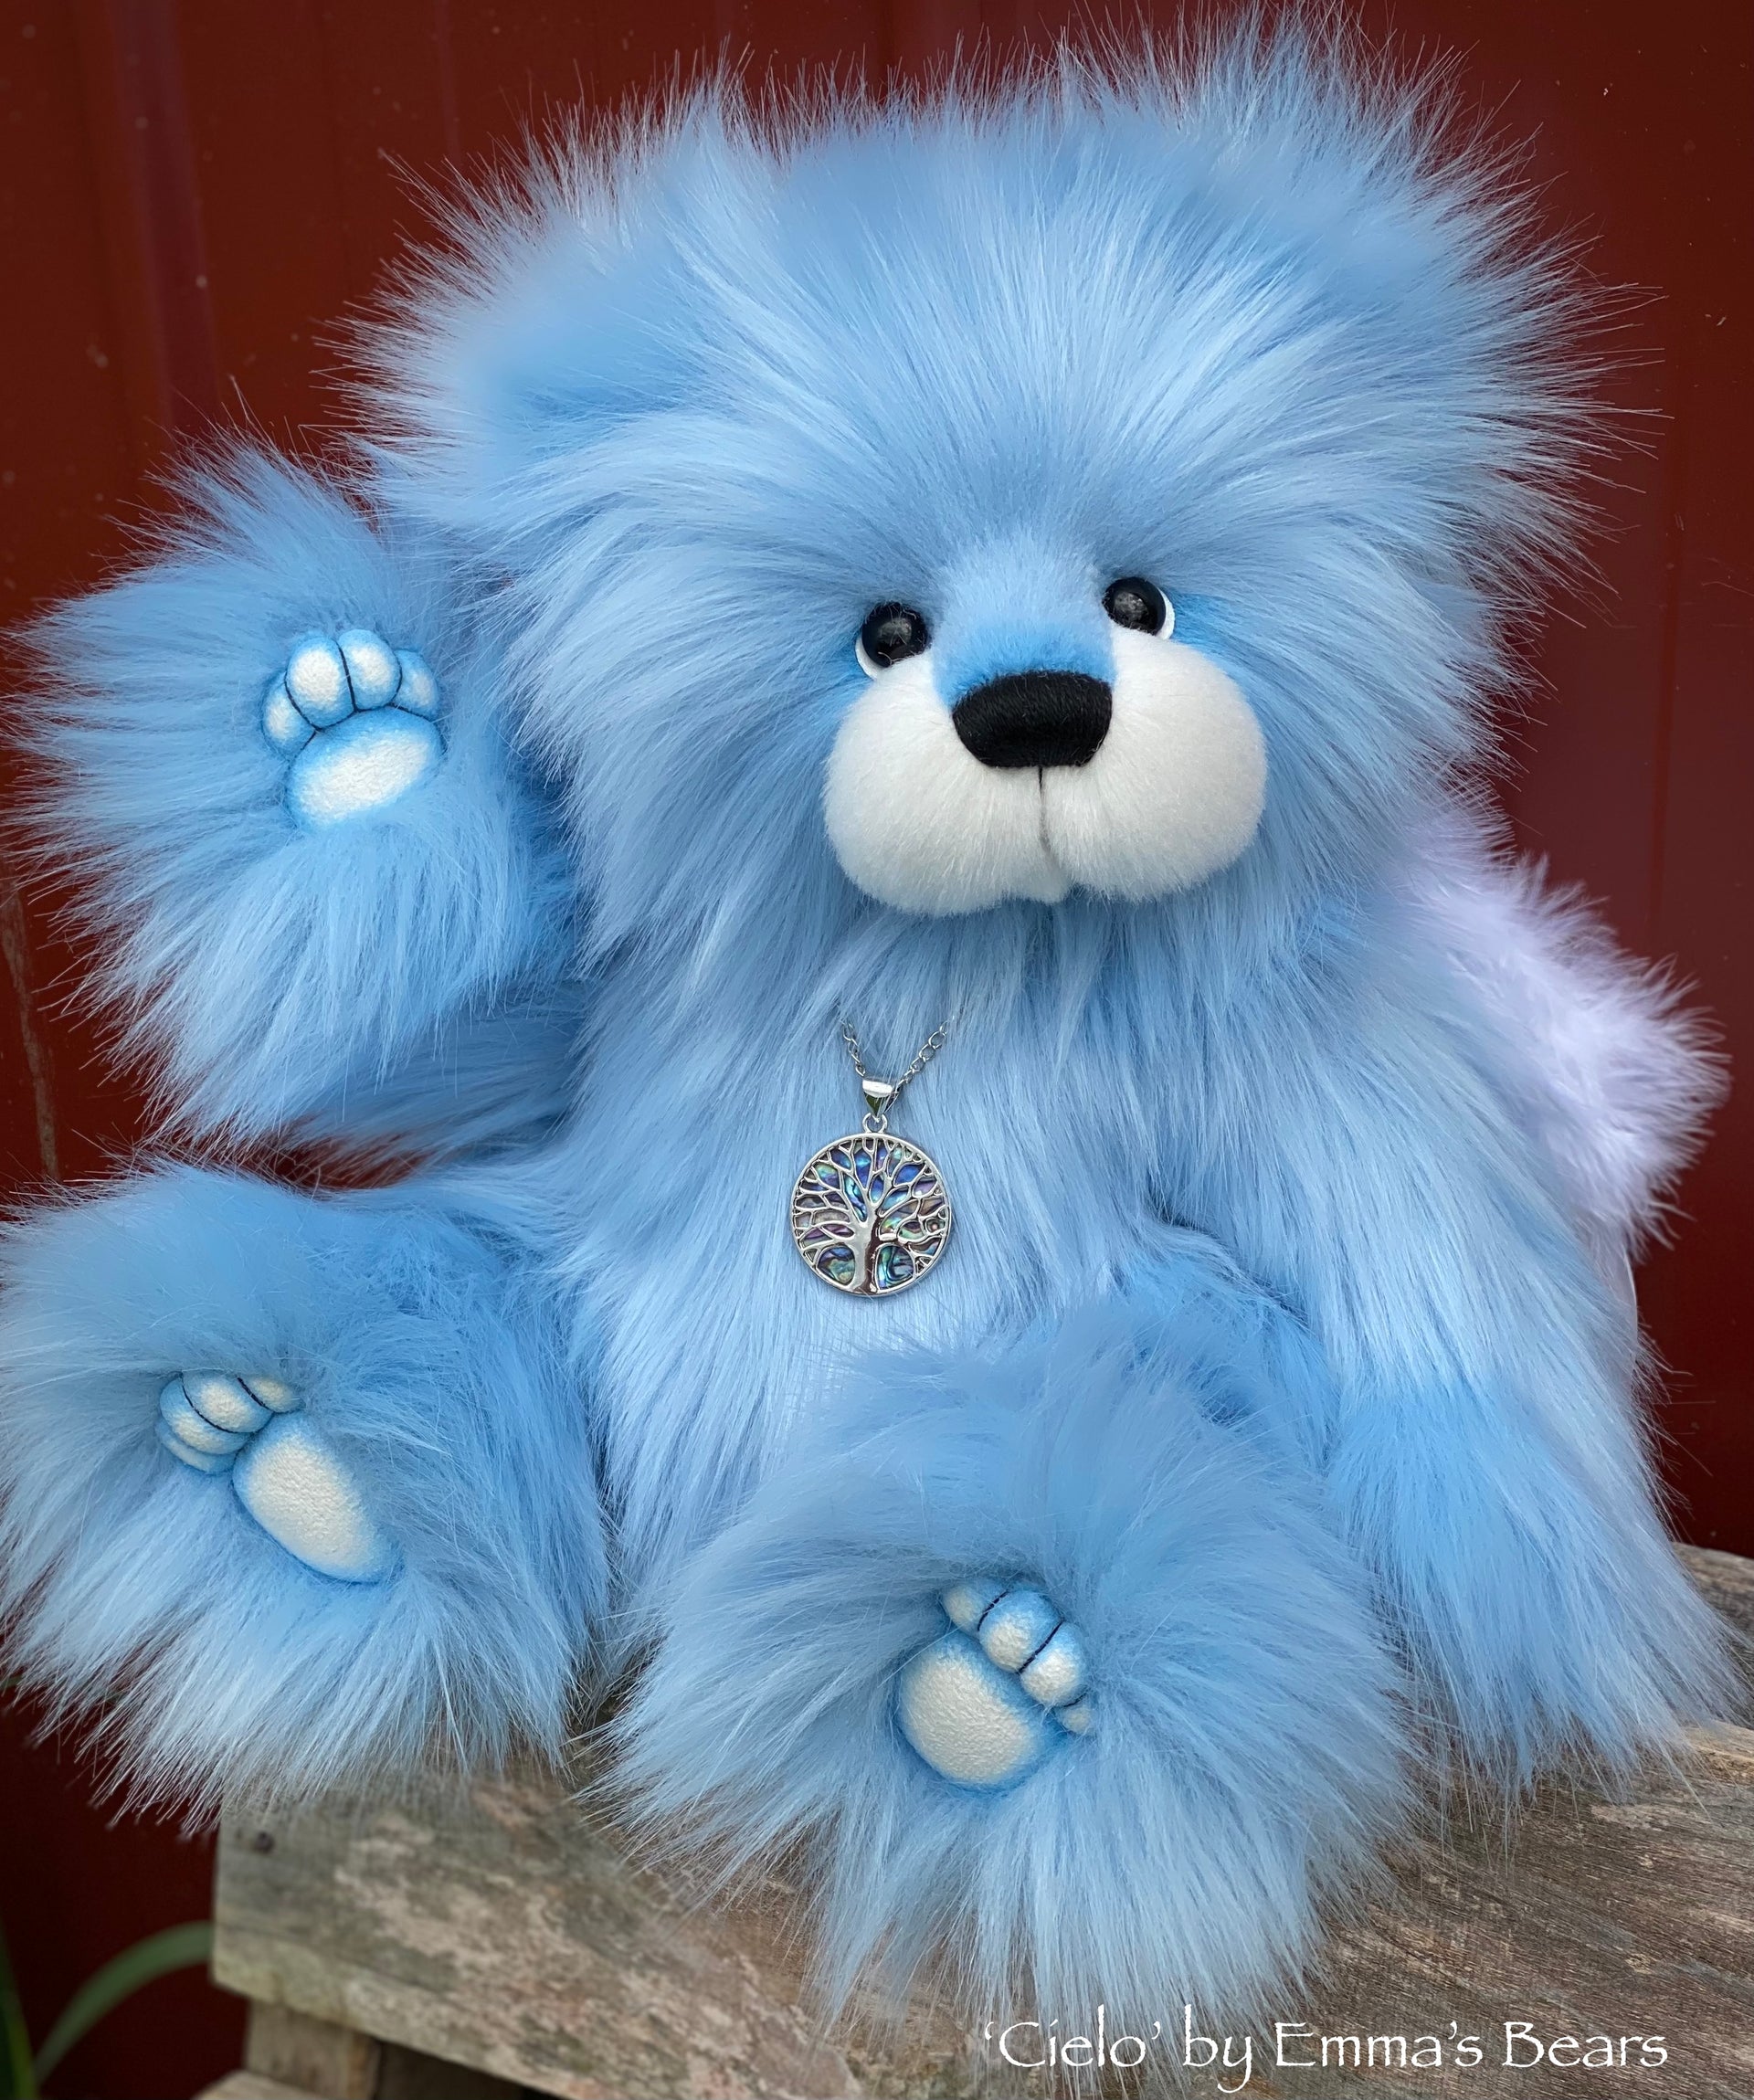 Cielo - 15" faux fur bear by Emmas Bears - OOAK